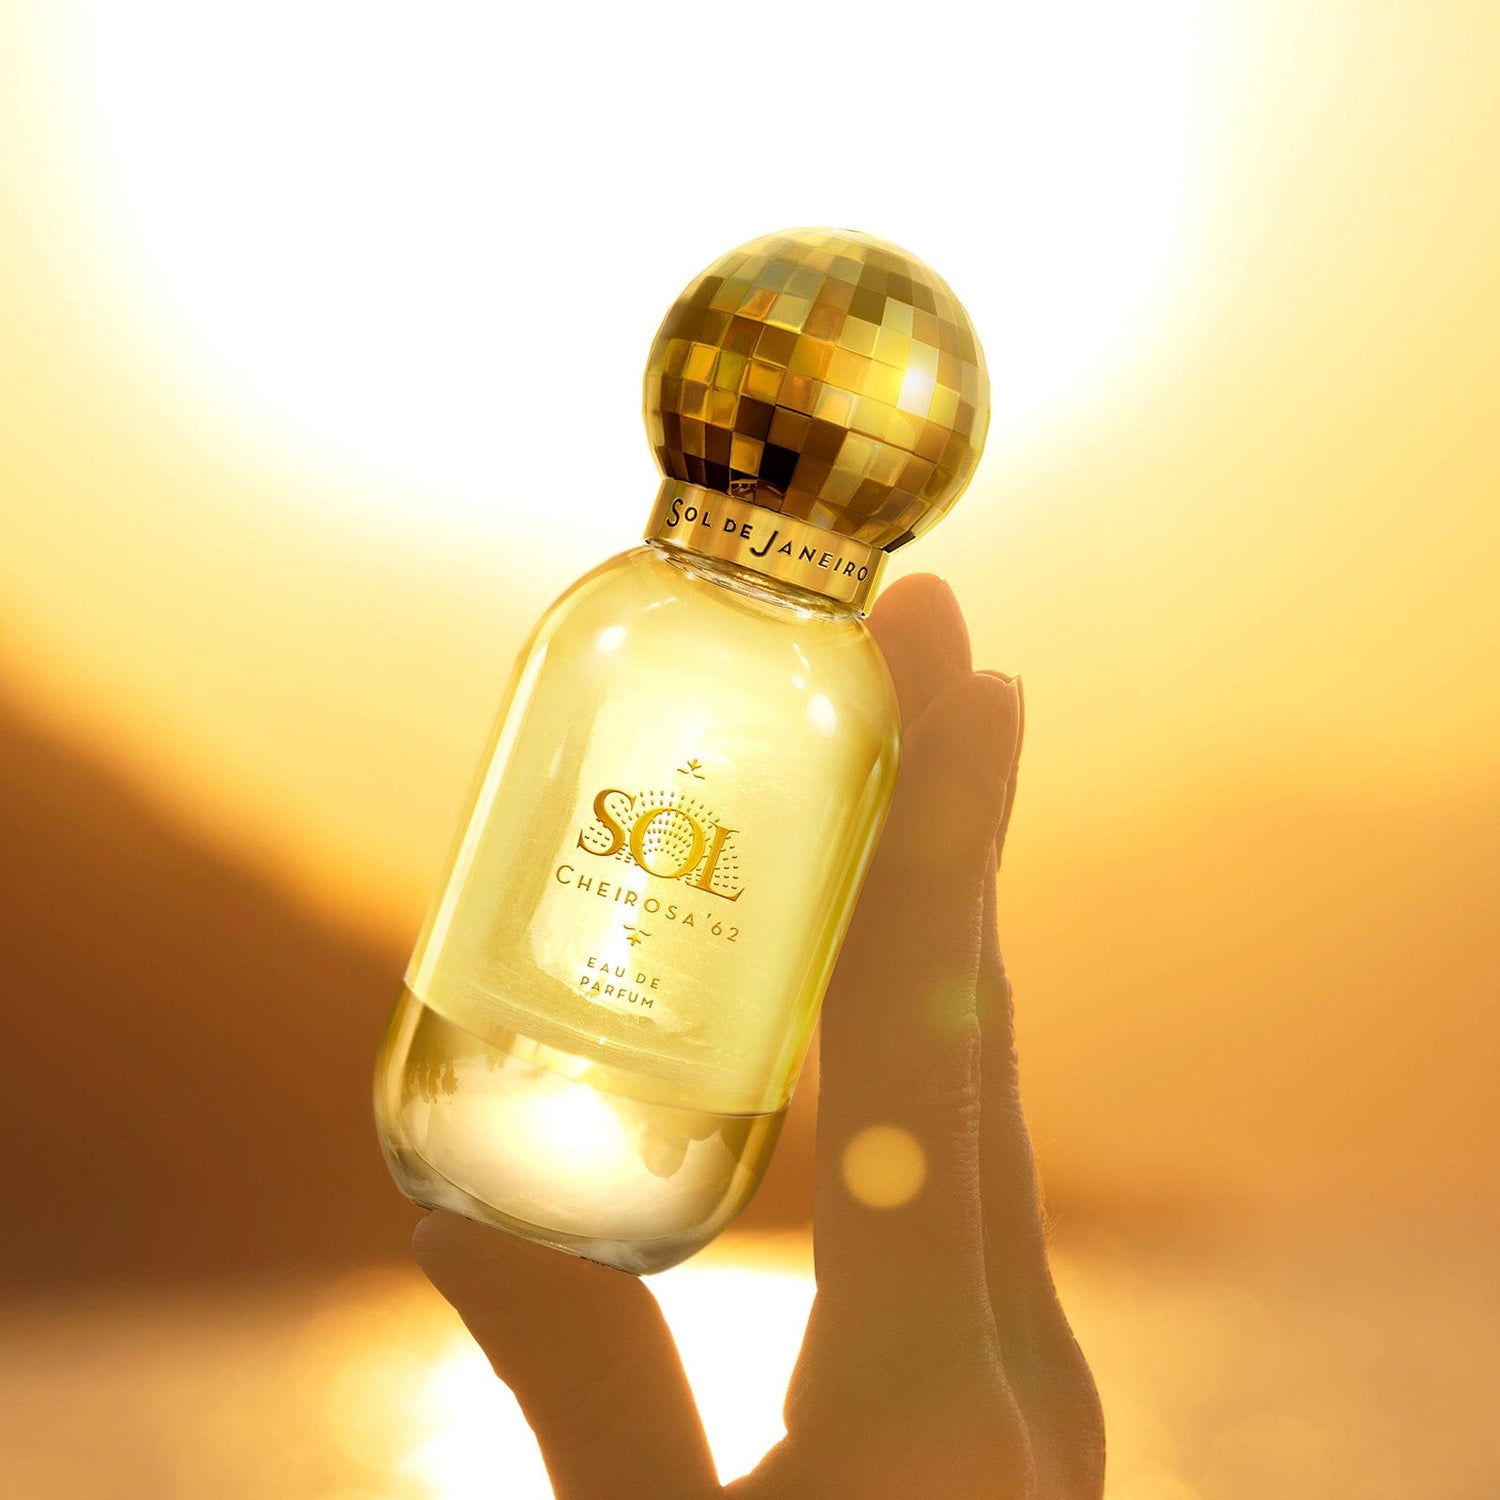 Sol de Janeiro Sol Cheirosa '62 Eau de Parfum